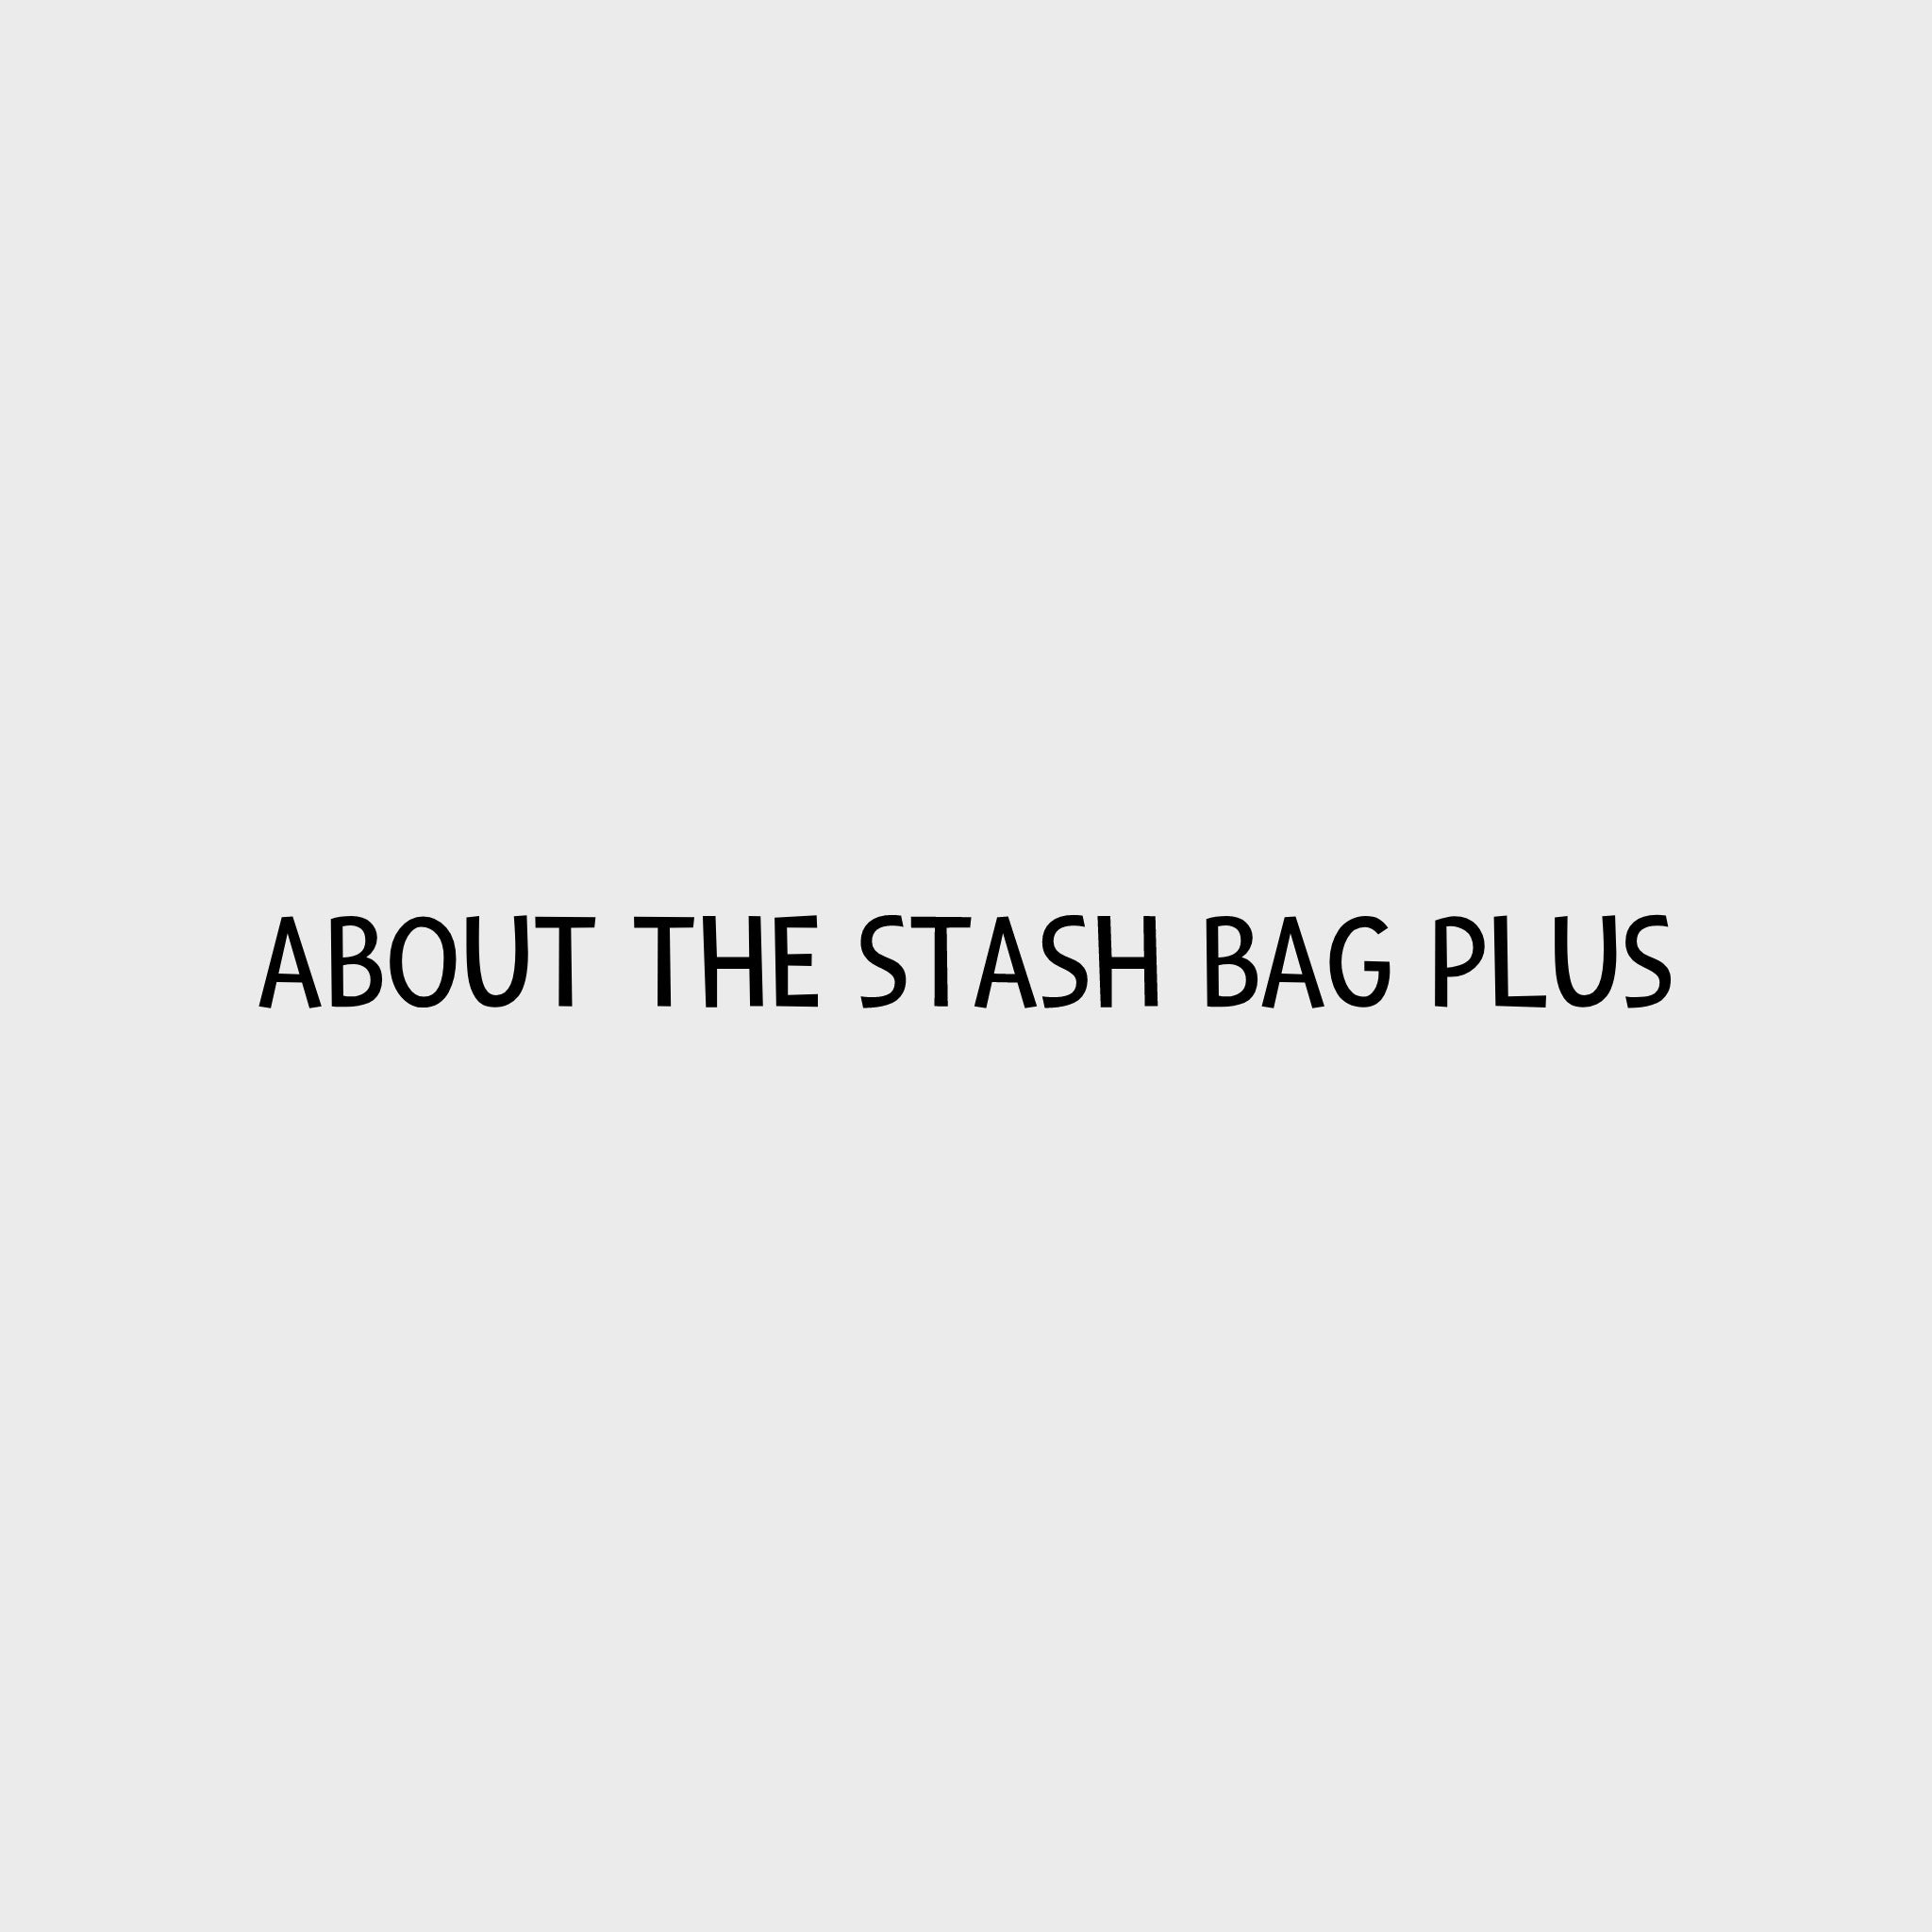 Video - Ruffwear Stash Bag Plus